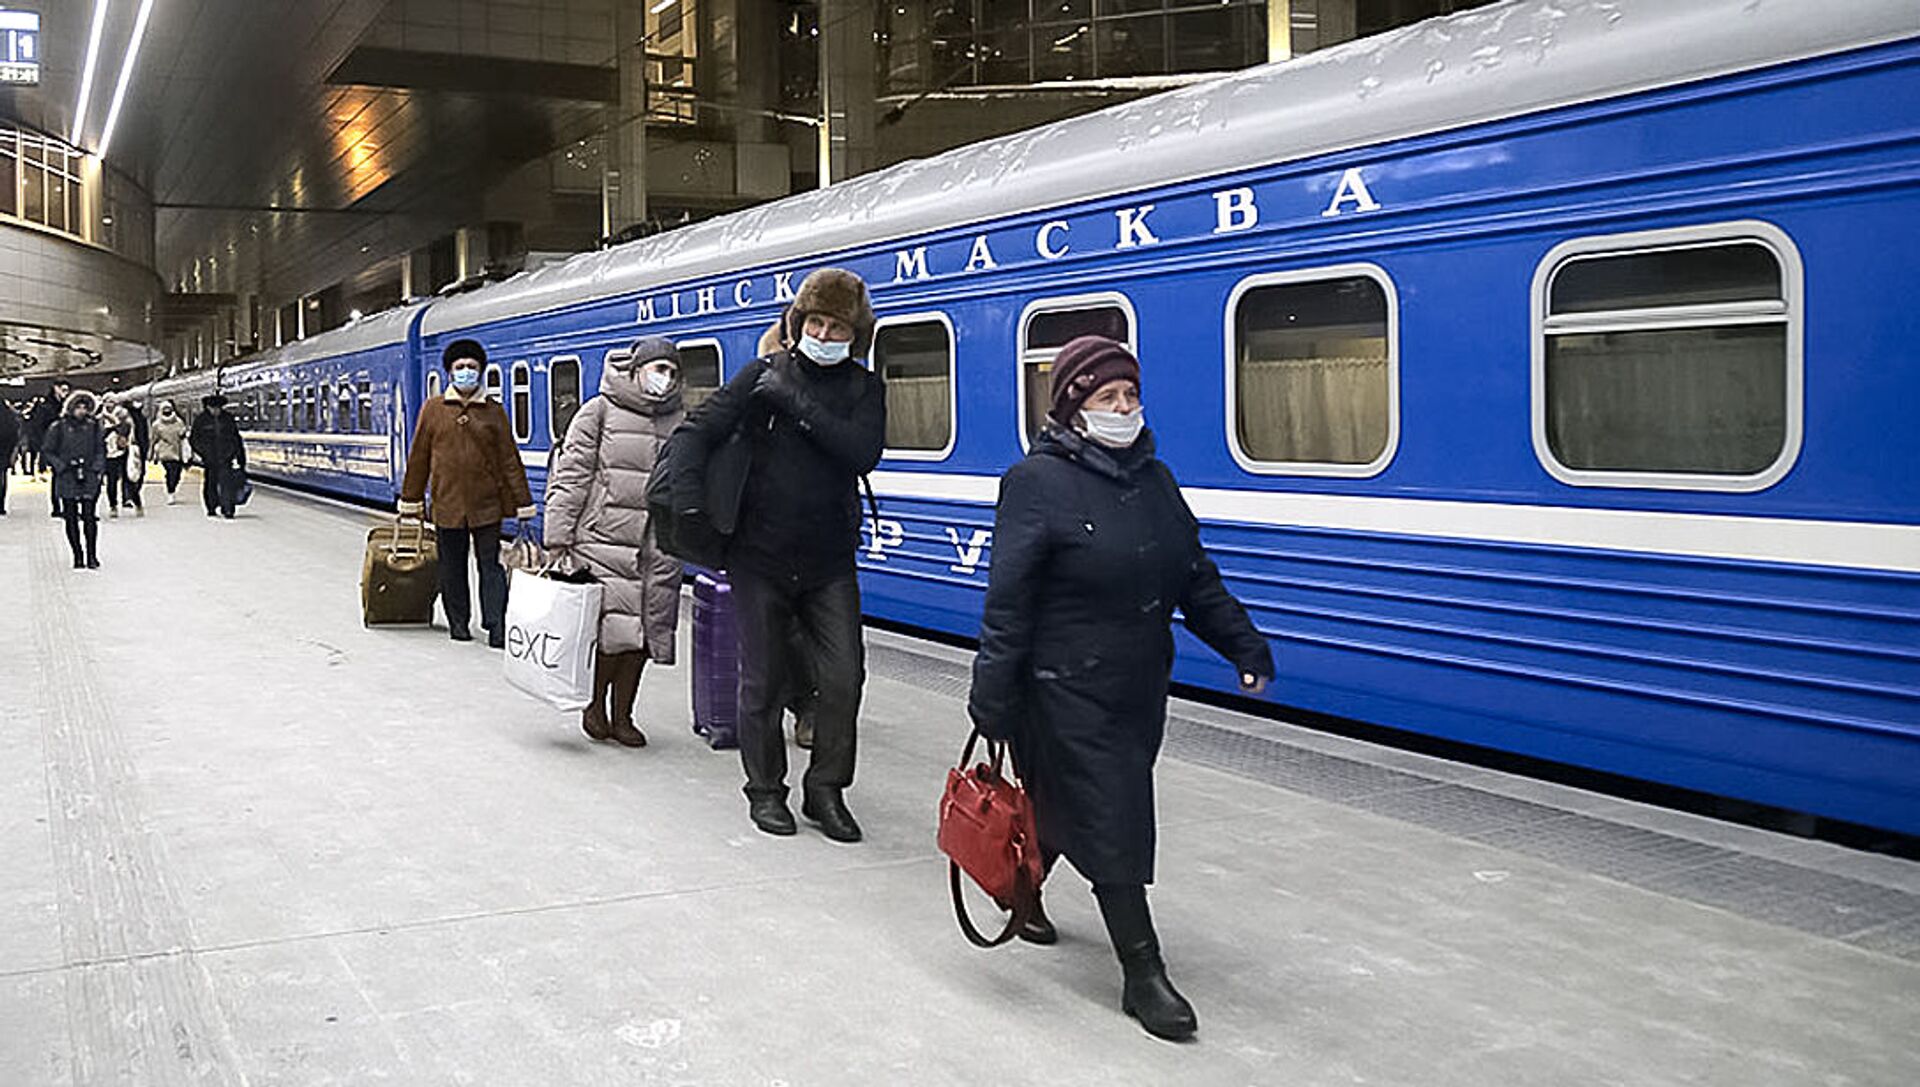 Поезд Москва-Минск Белорусской железной дороги - Sputnik Lietuva, 1920, 20.02.2021